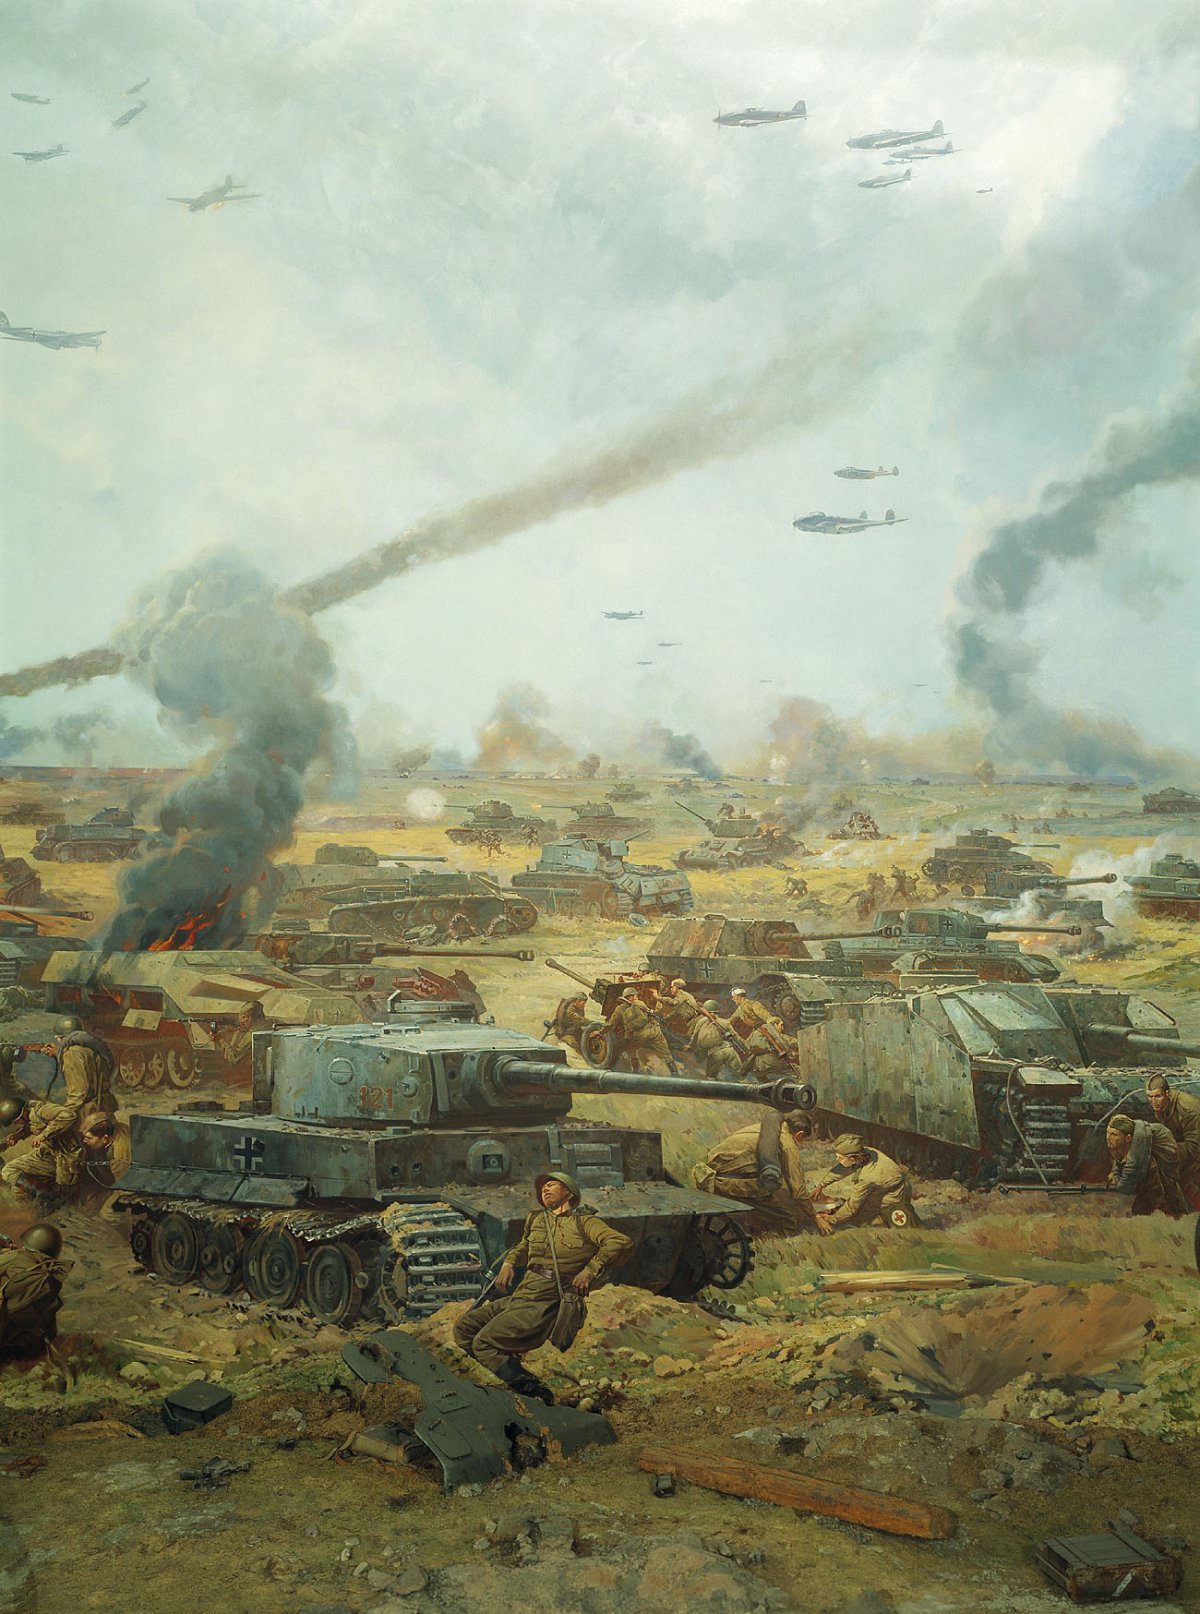 Курская битва 1943